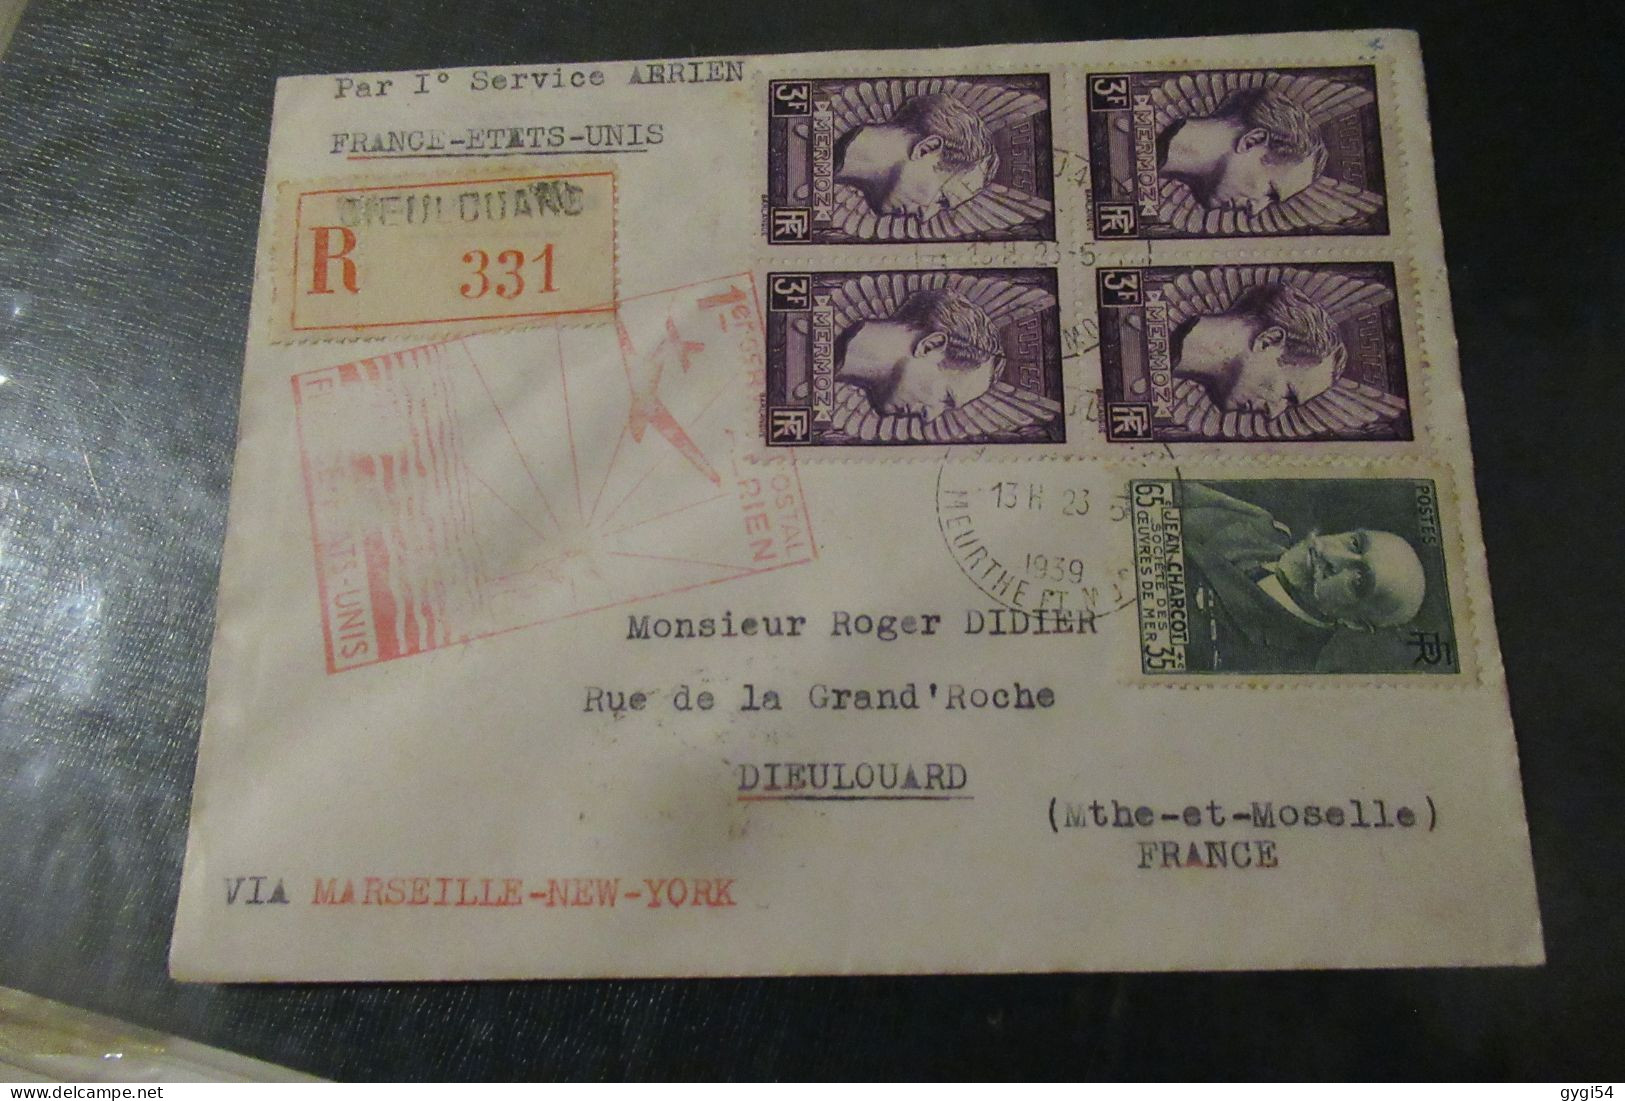 Par Premier Service Aérien France Etats - Unis 1939 Lettre R Dieulouard - First Flight Covers